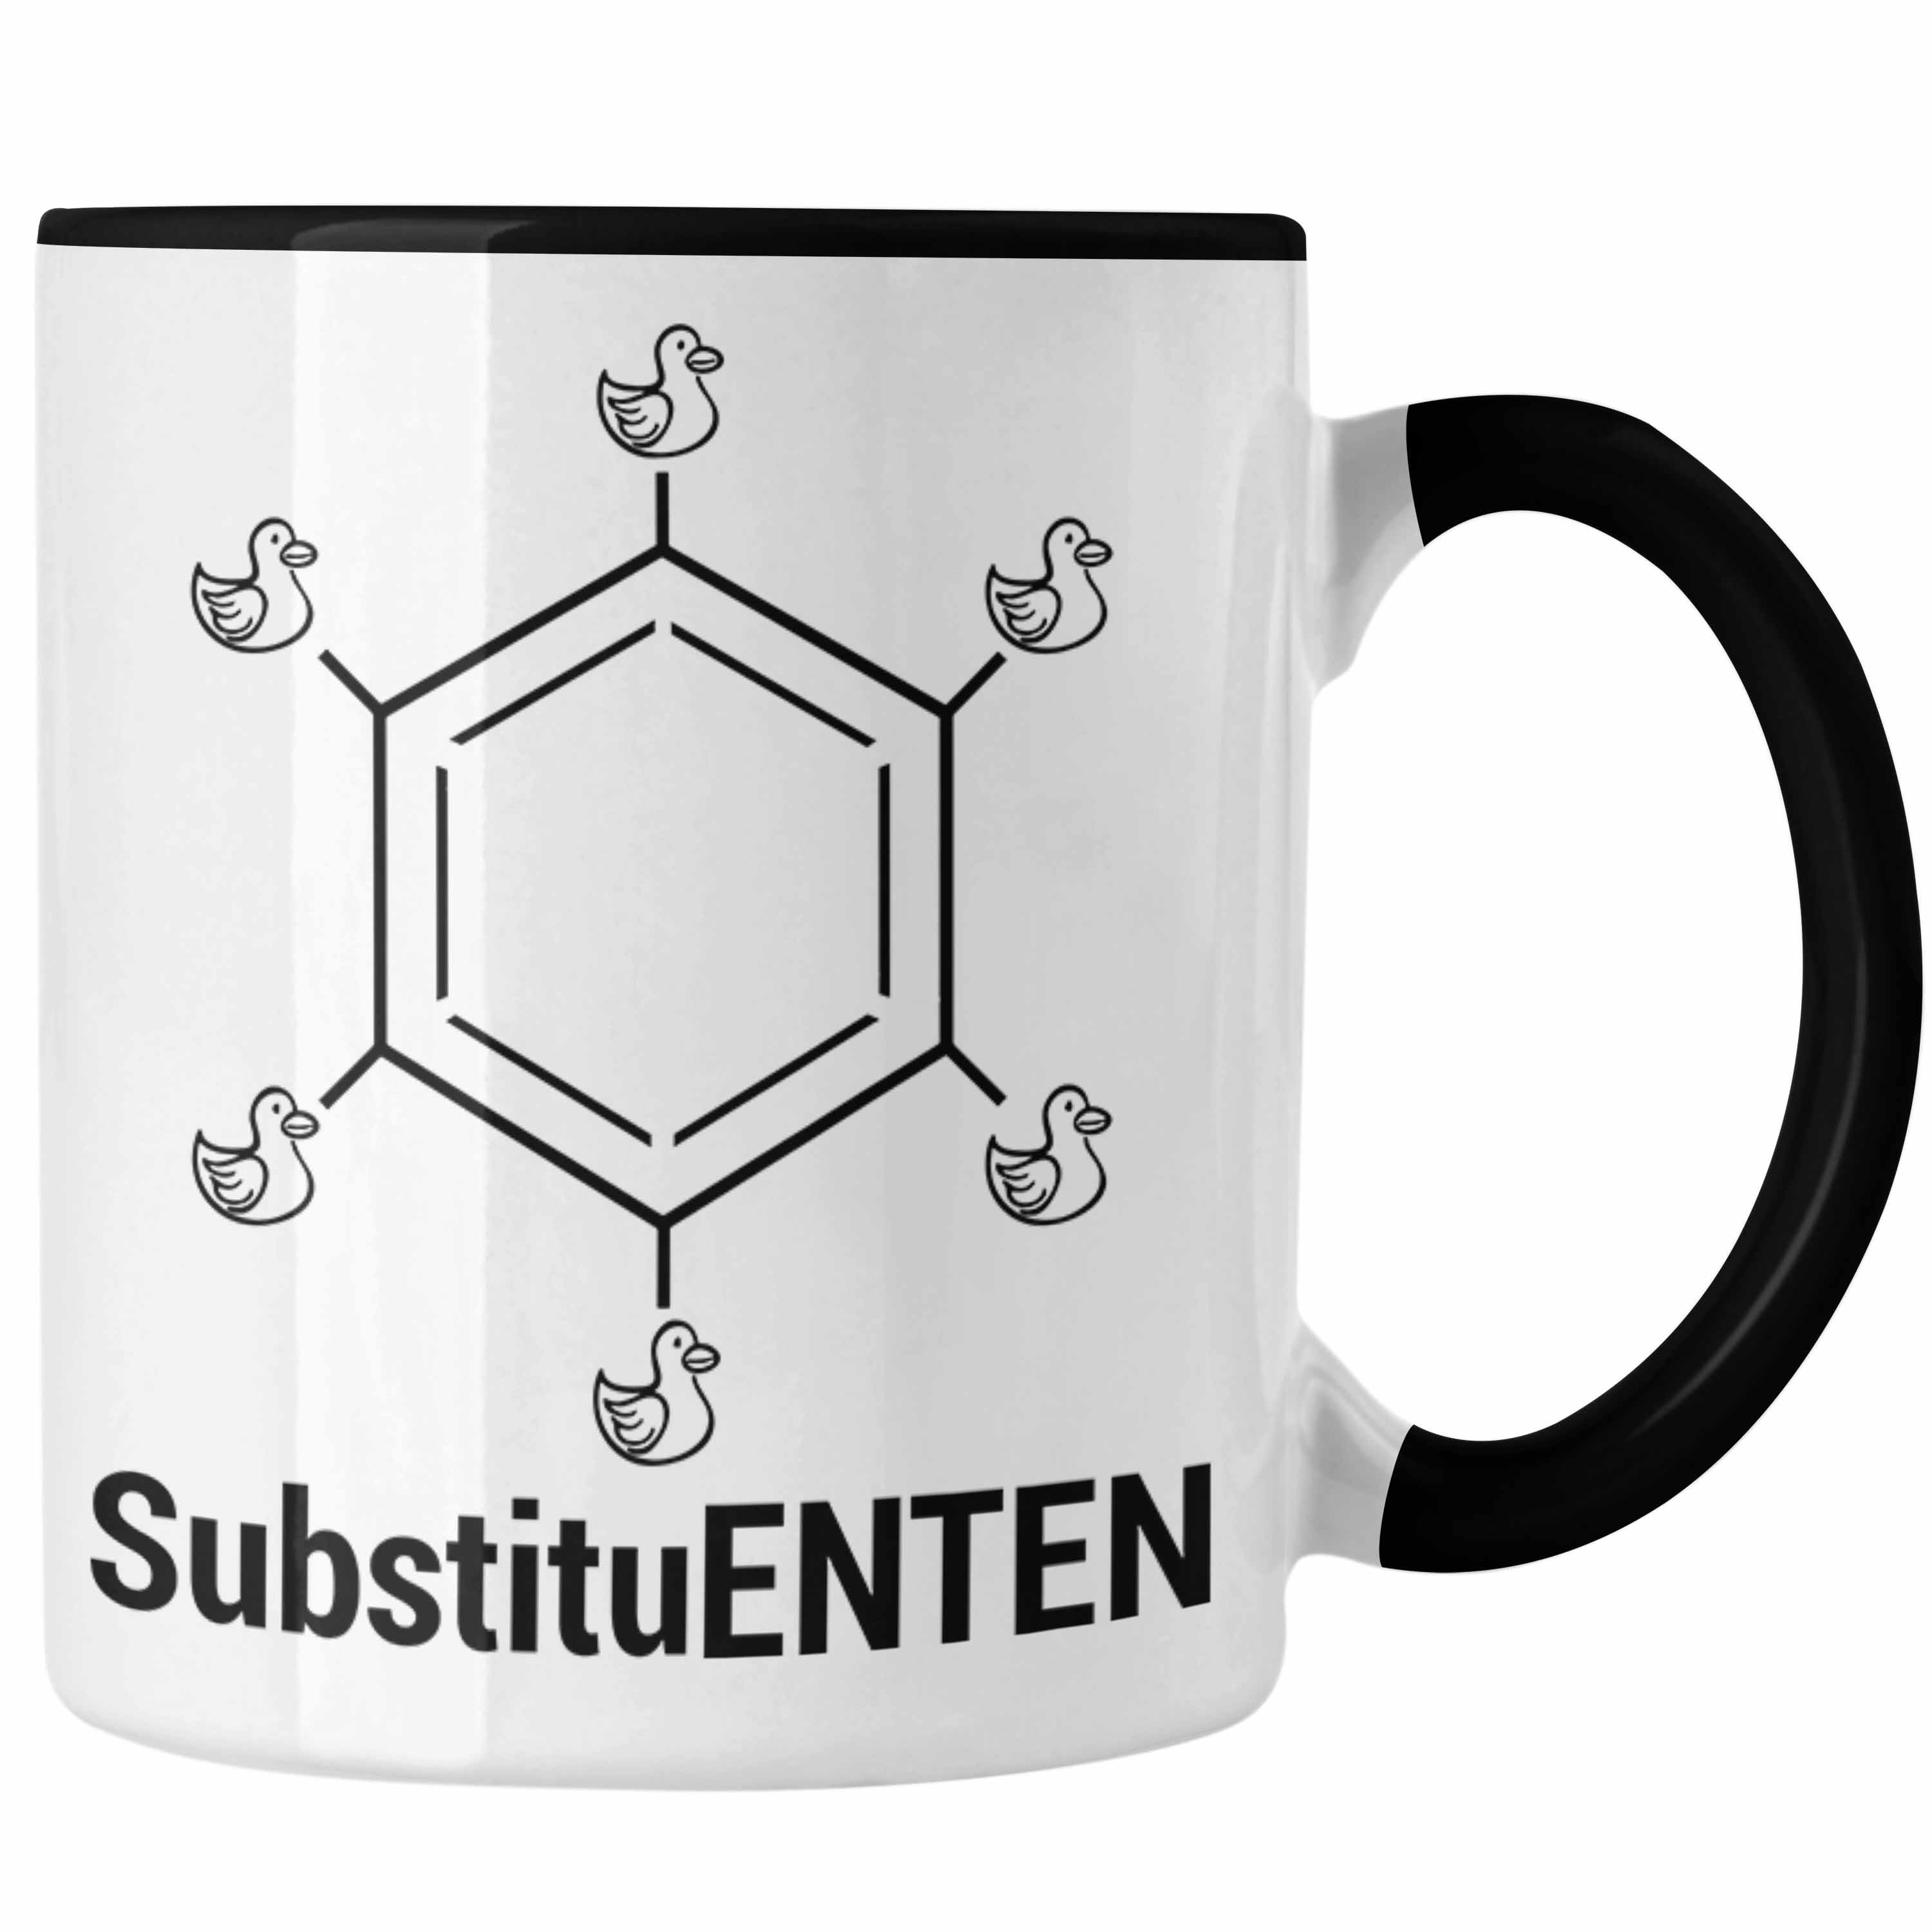 Trendation - Chemie Tasse SubstituENTEN